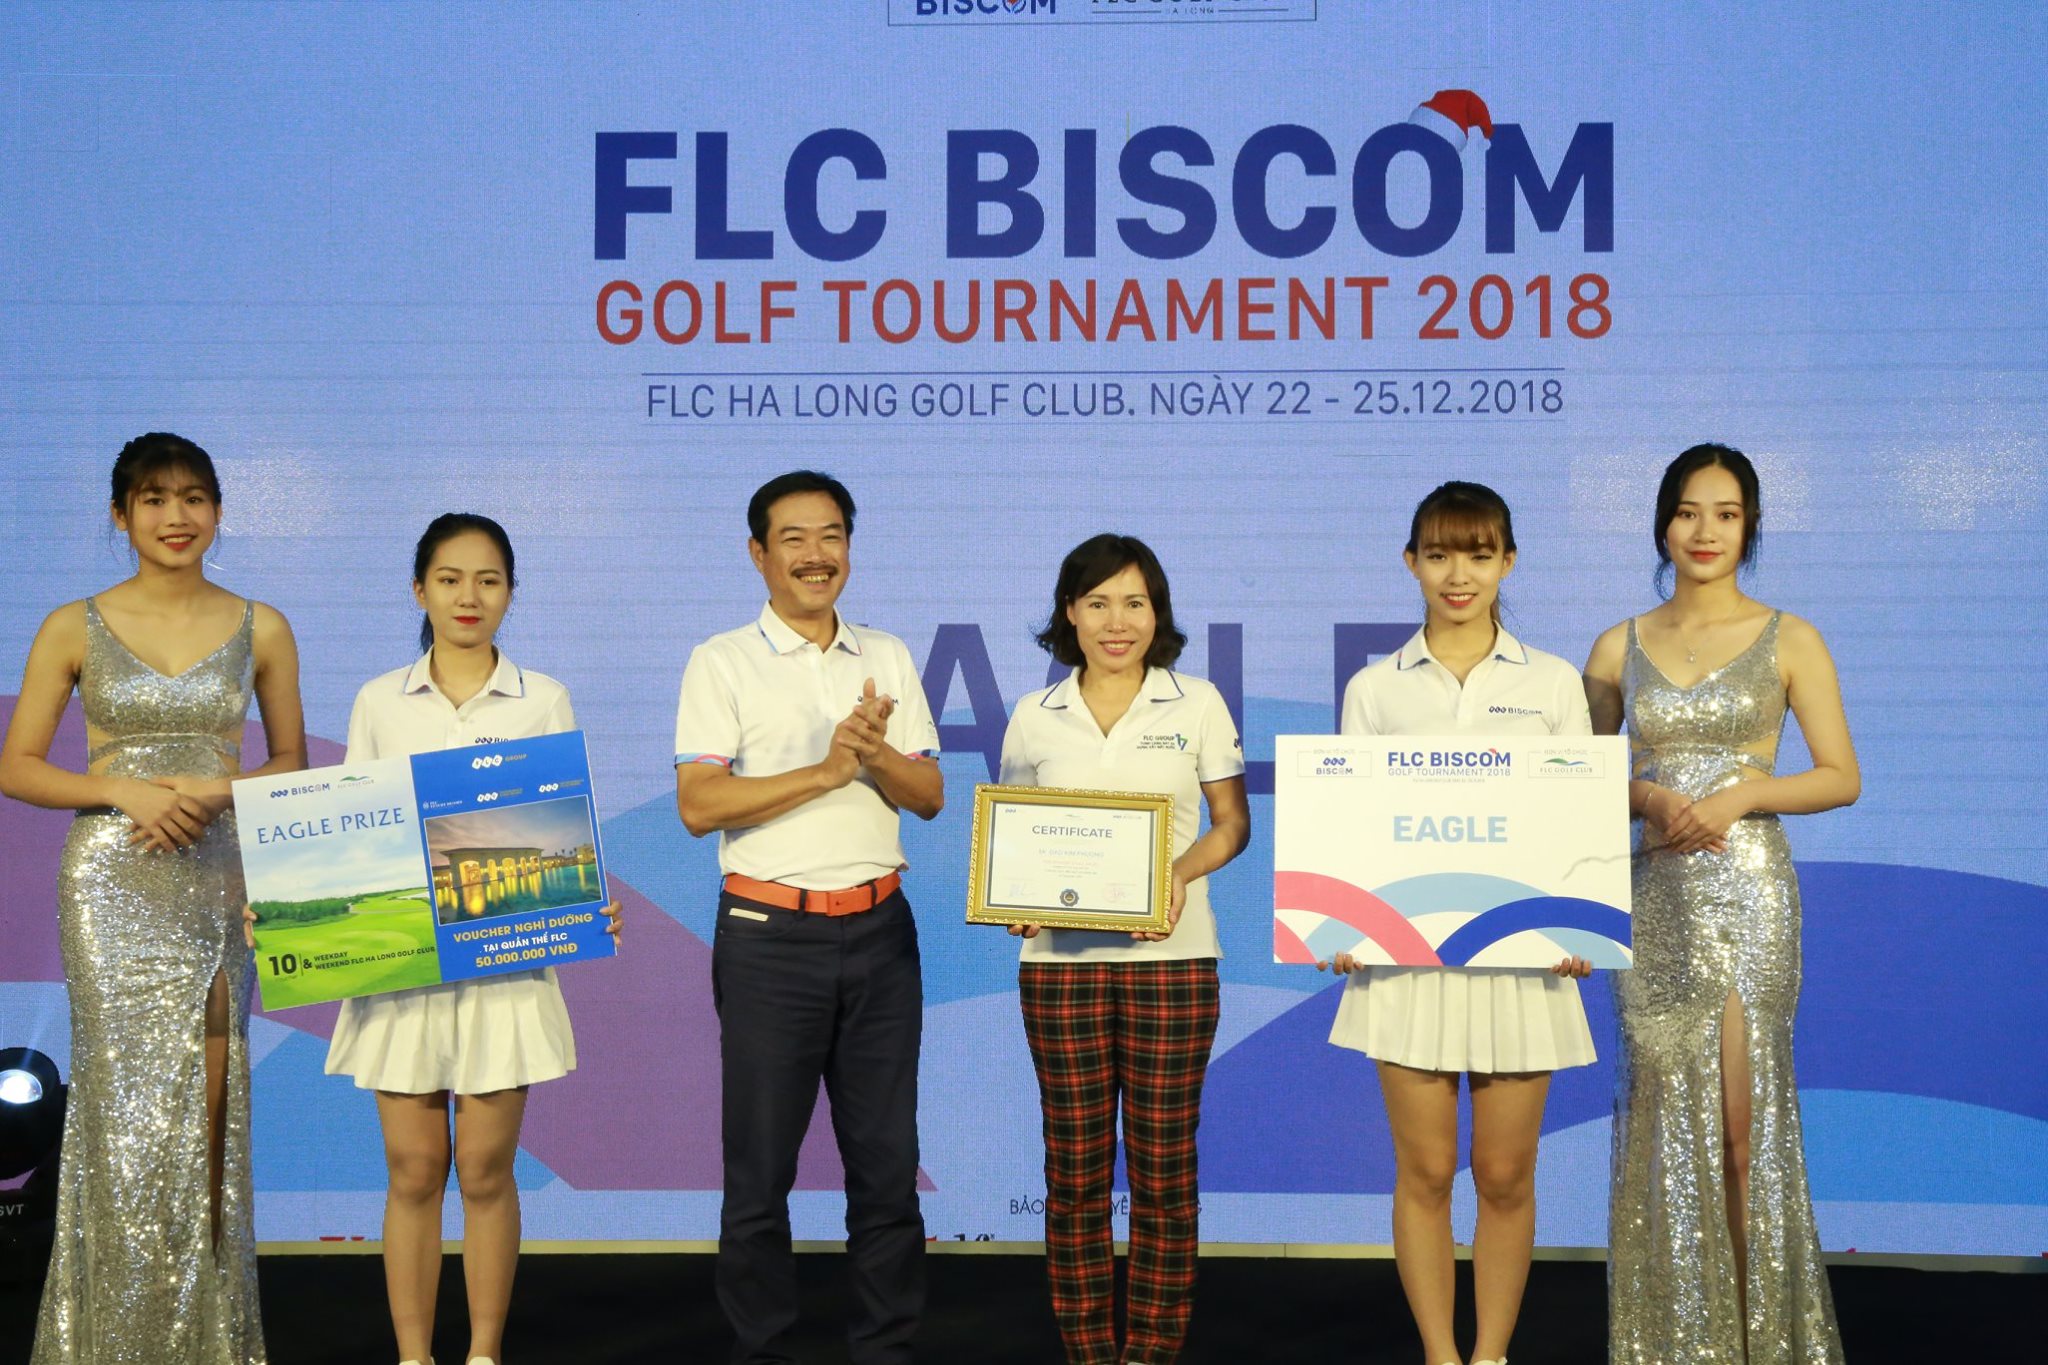 Đào Kim Phượng – golfer nữ đầu tiên ghi điểm Eagle tại Biscom Golf Tournament 2018